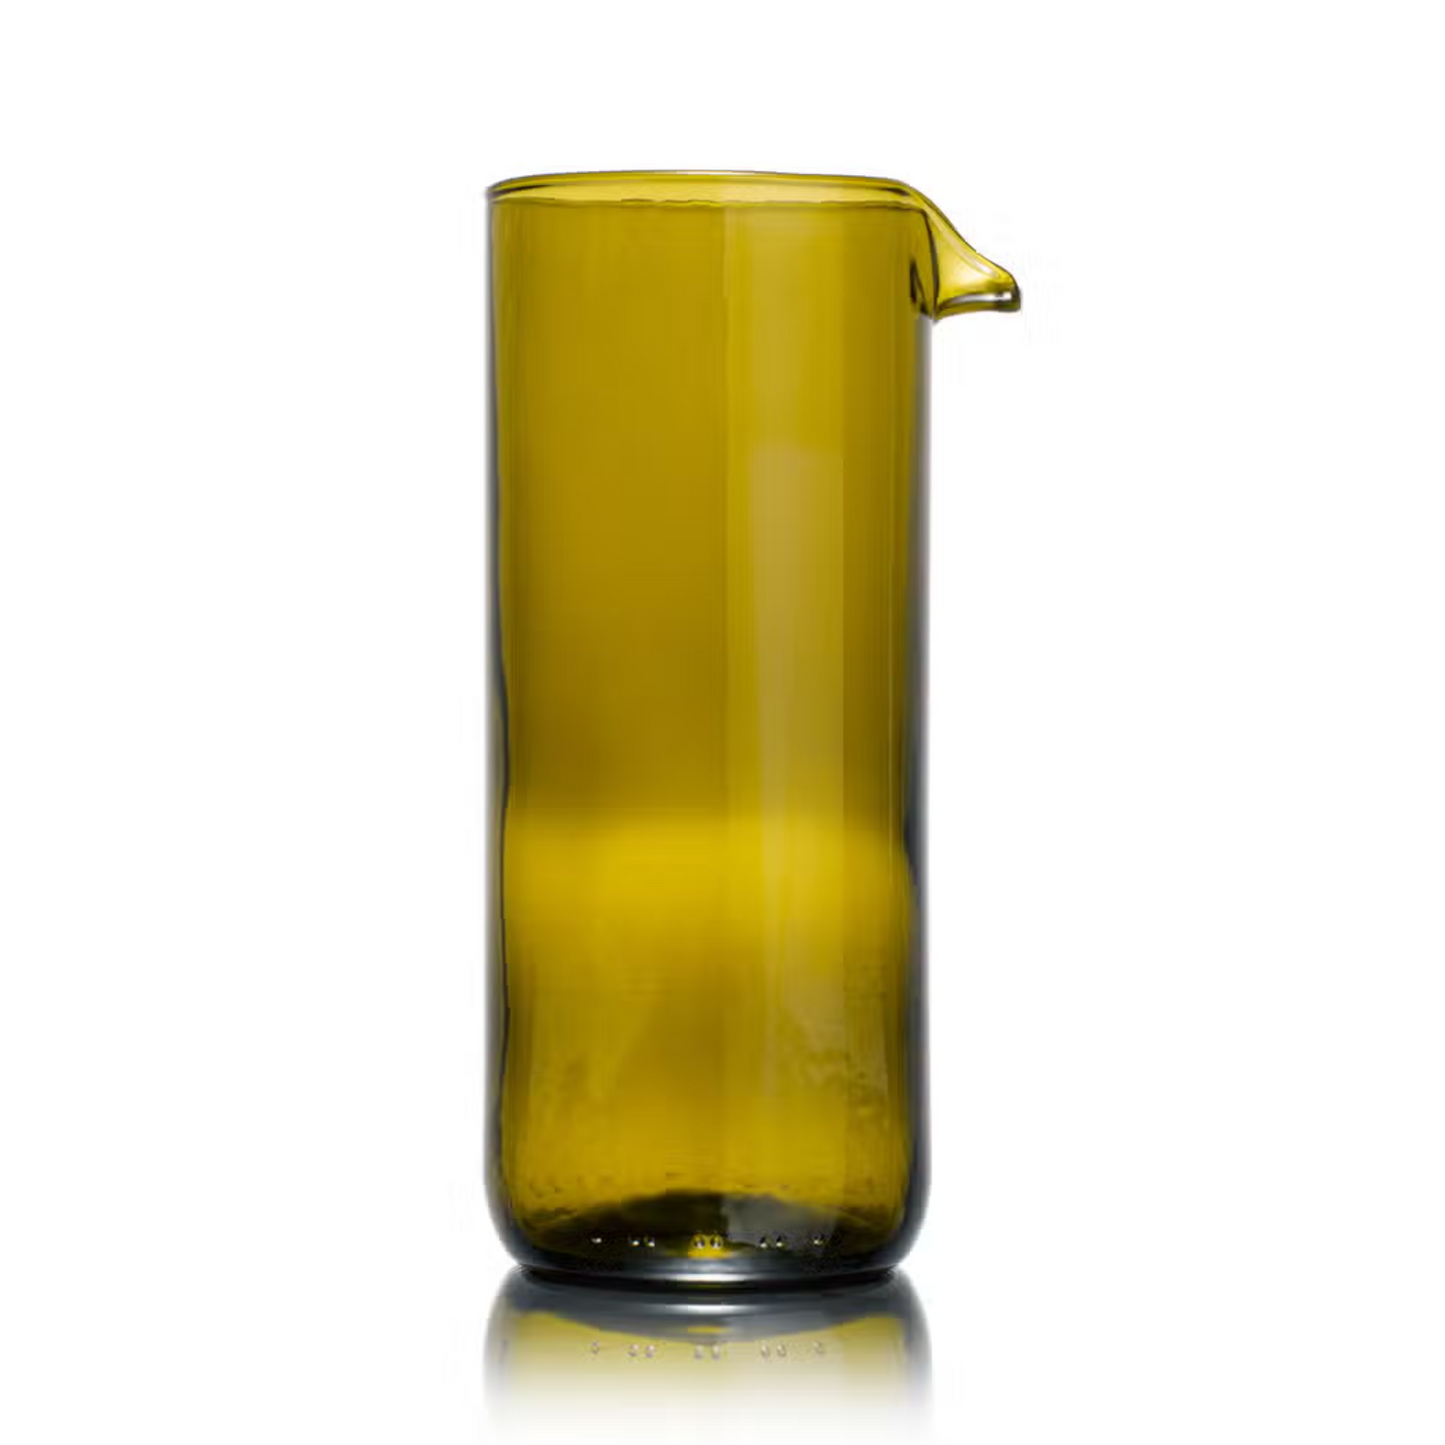 Glaskaraffe aus recycelten Weinflaschen (7,5x18 cm) - REBOTTLED